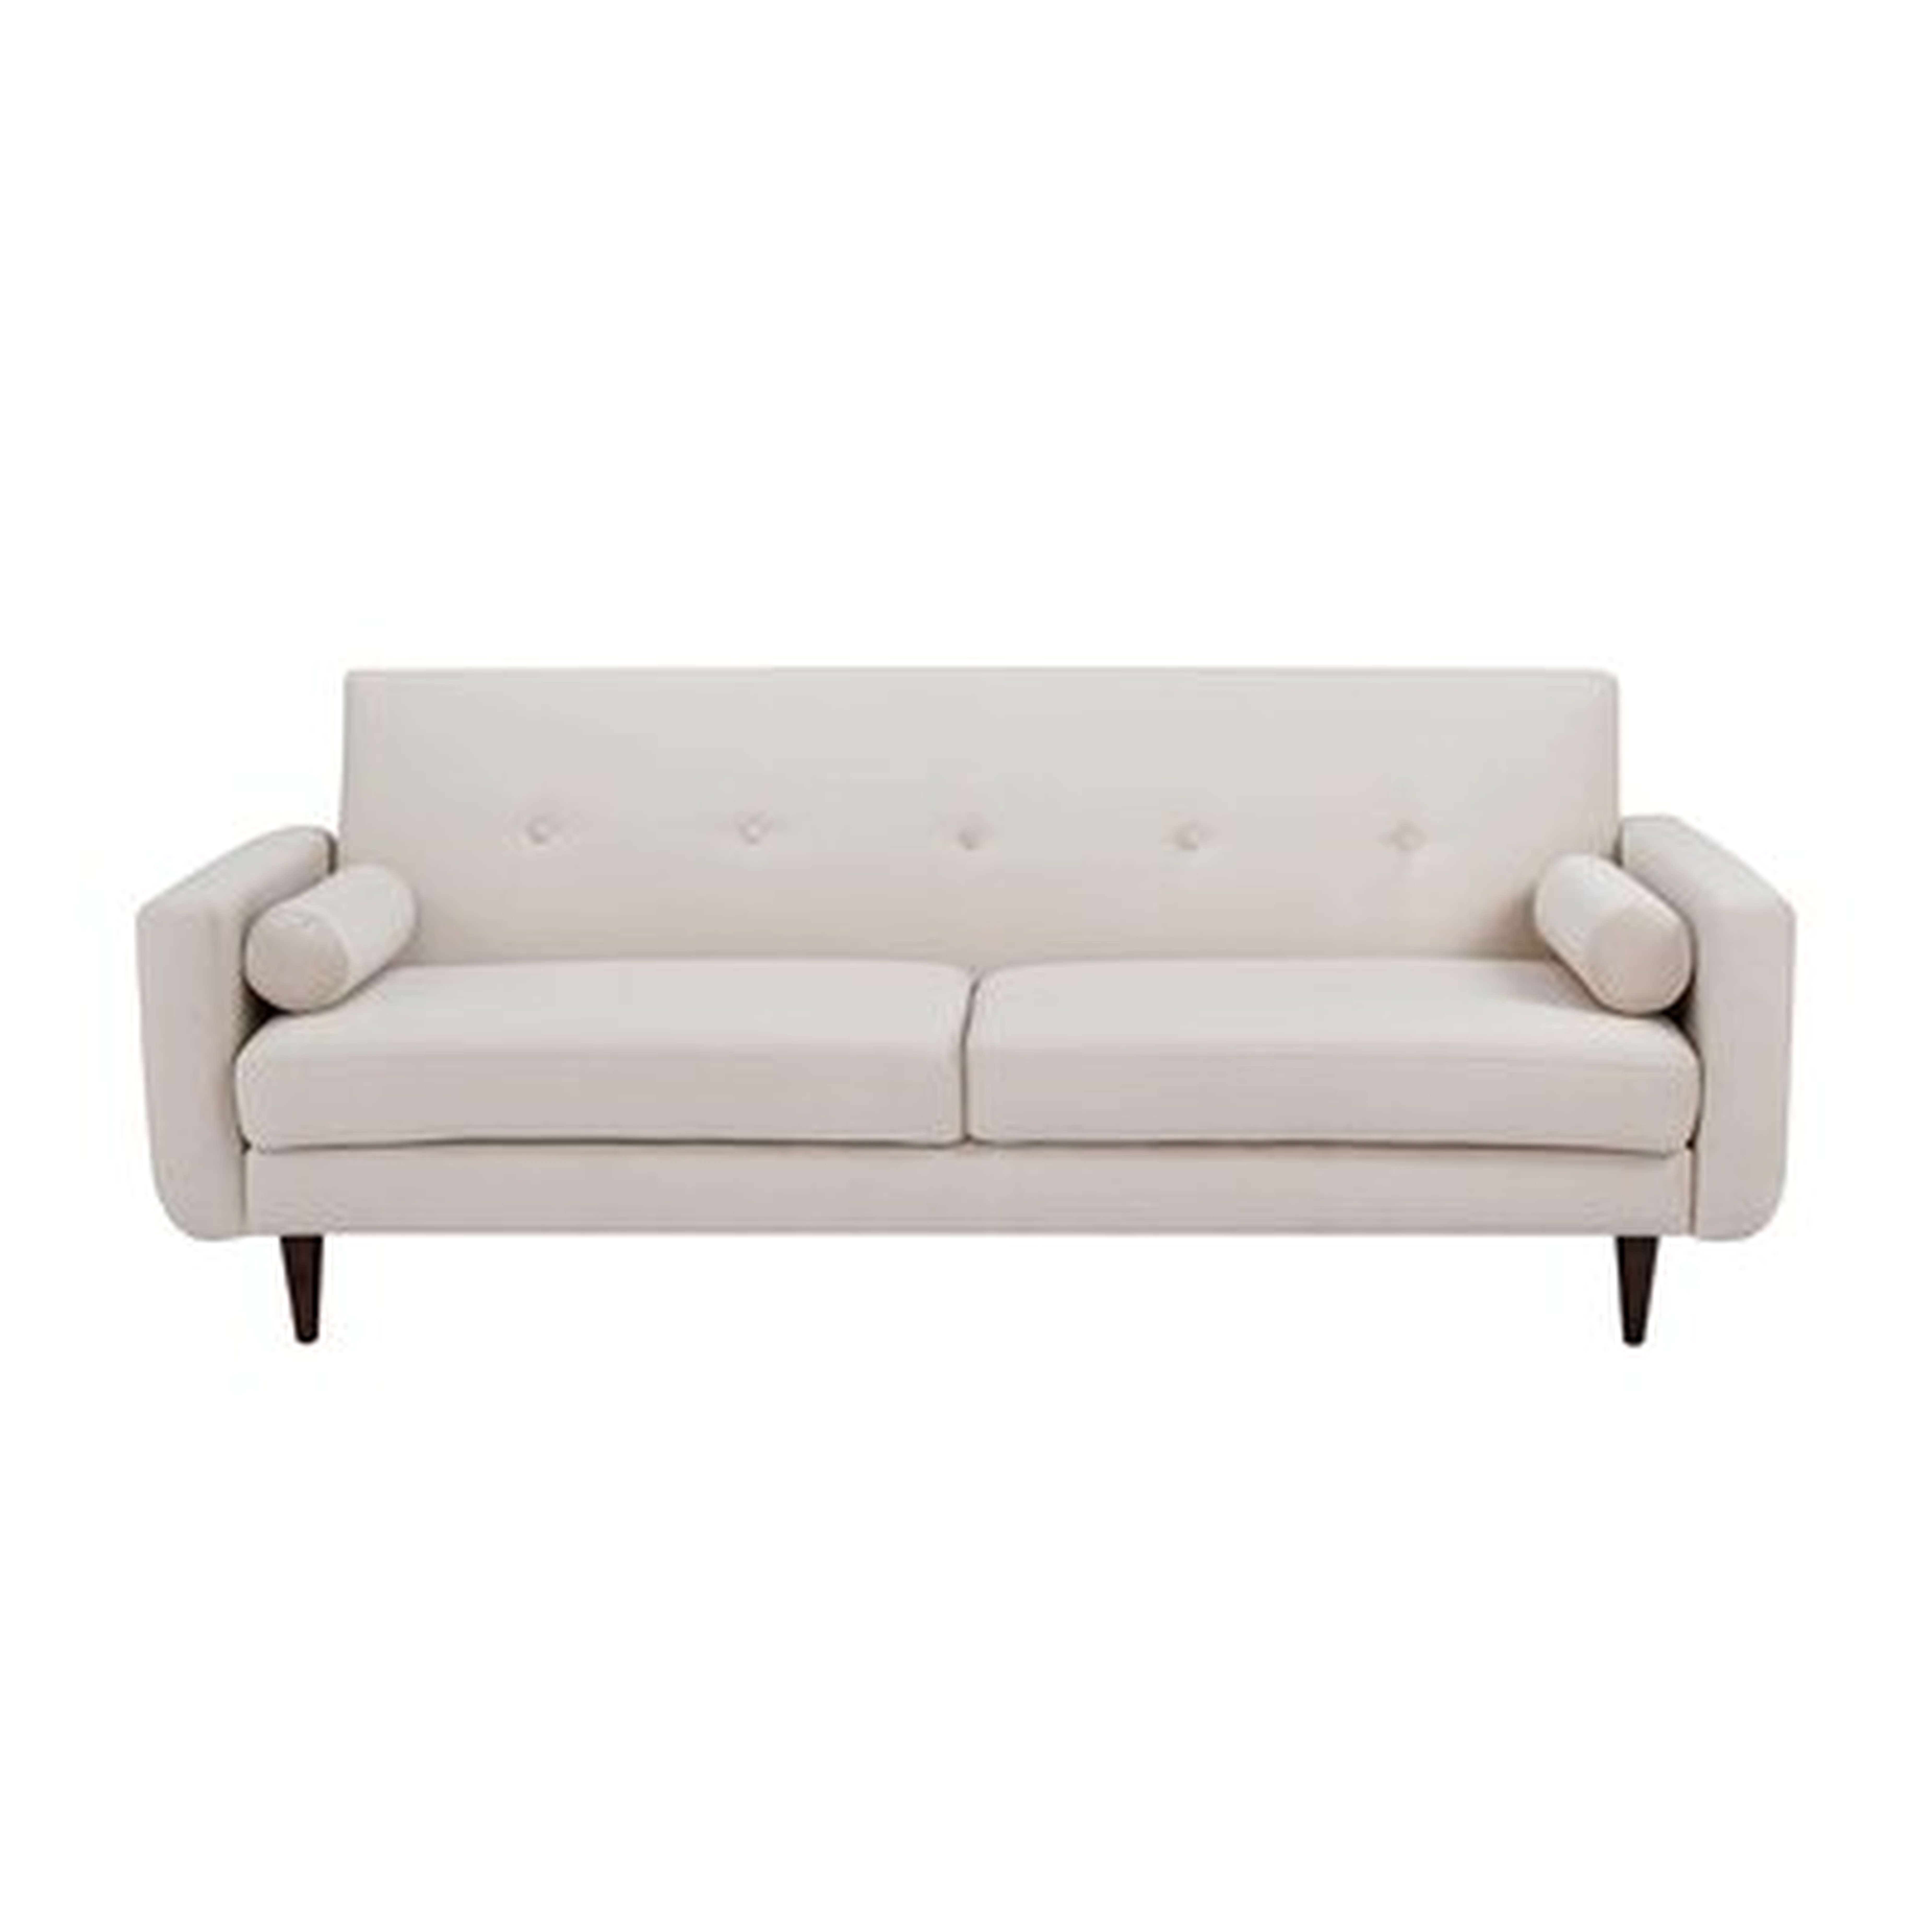 Roshawna Velvet Fabric Sofa With Bolster Pillows, Ivory - Wayfair